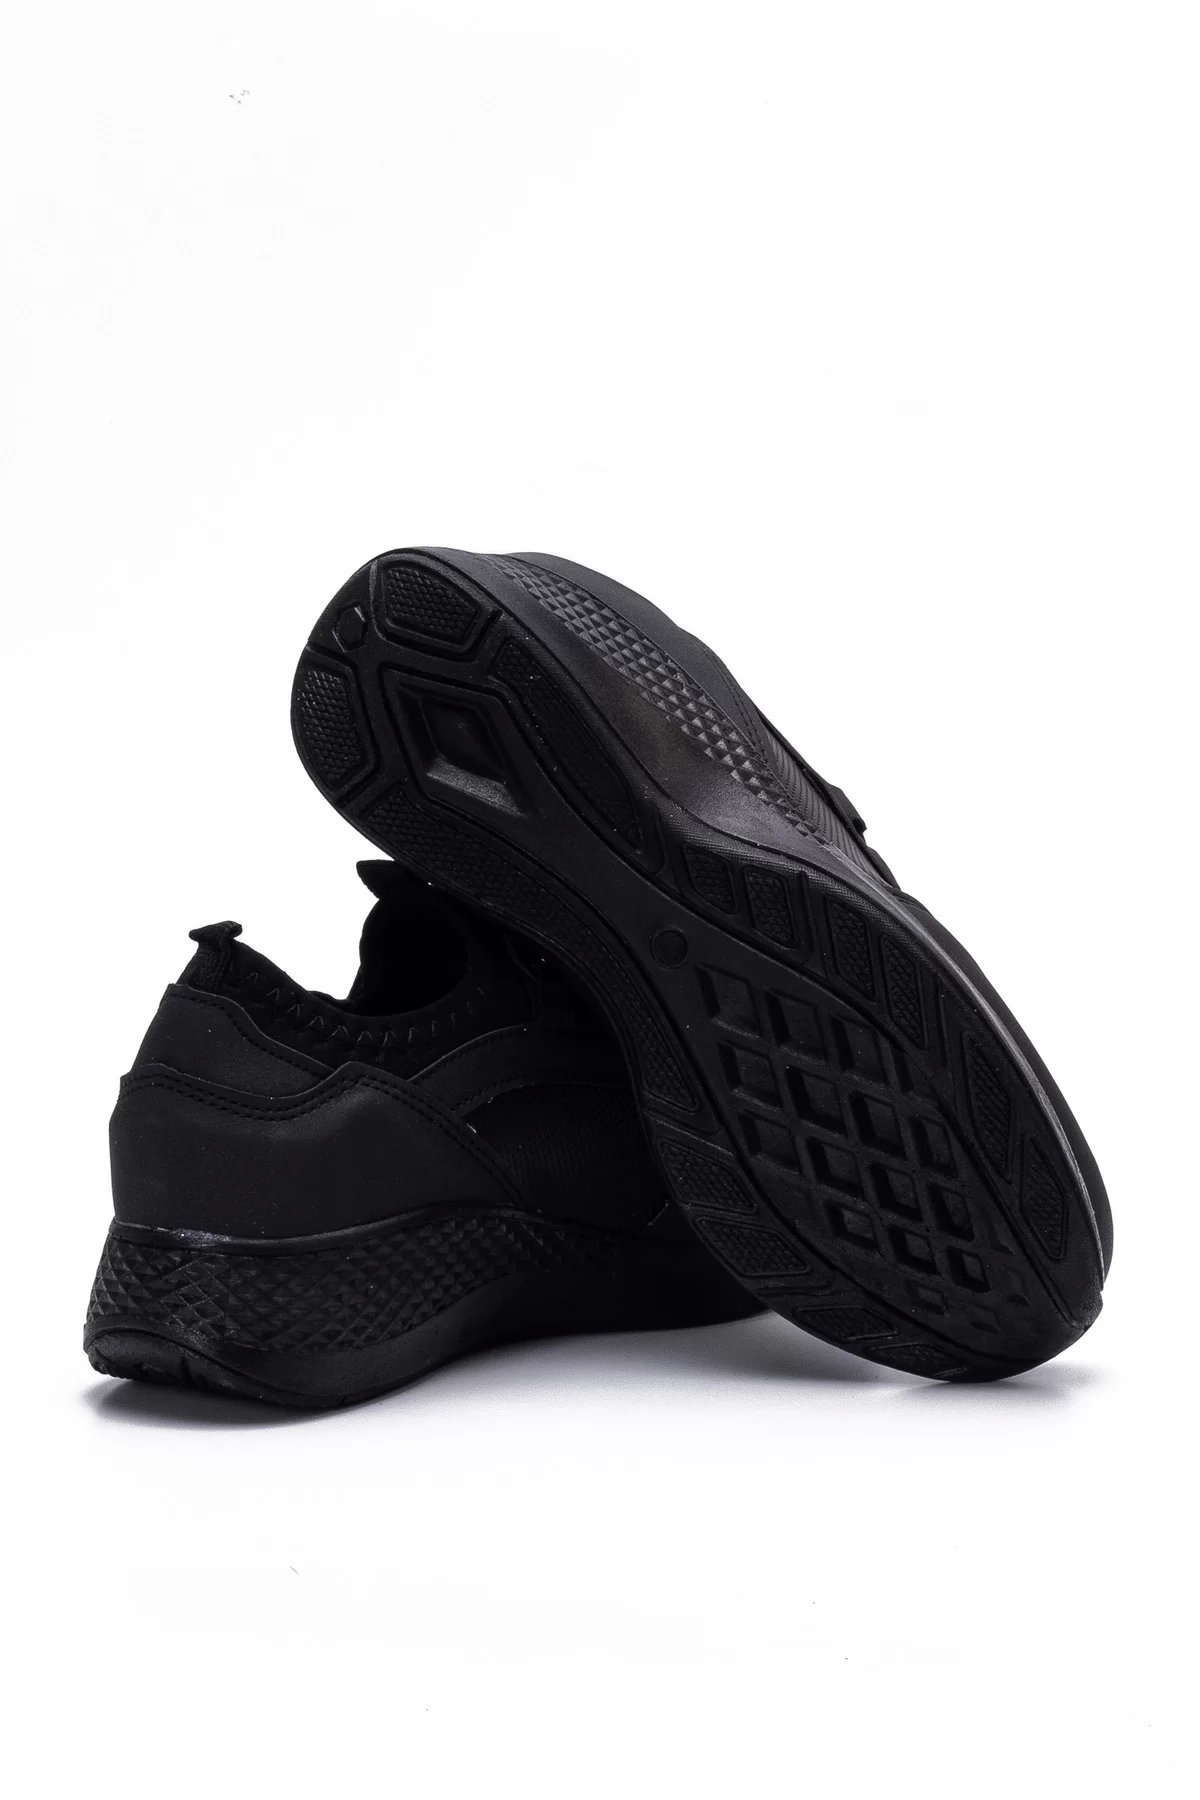 Kadın Sneaker 3005 - Siyah Cilt